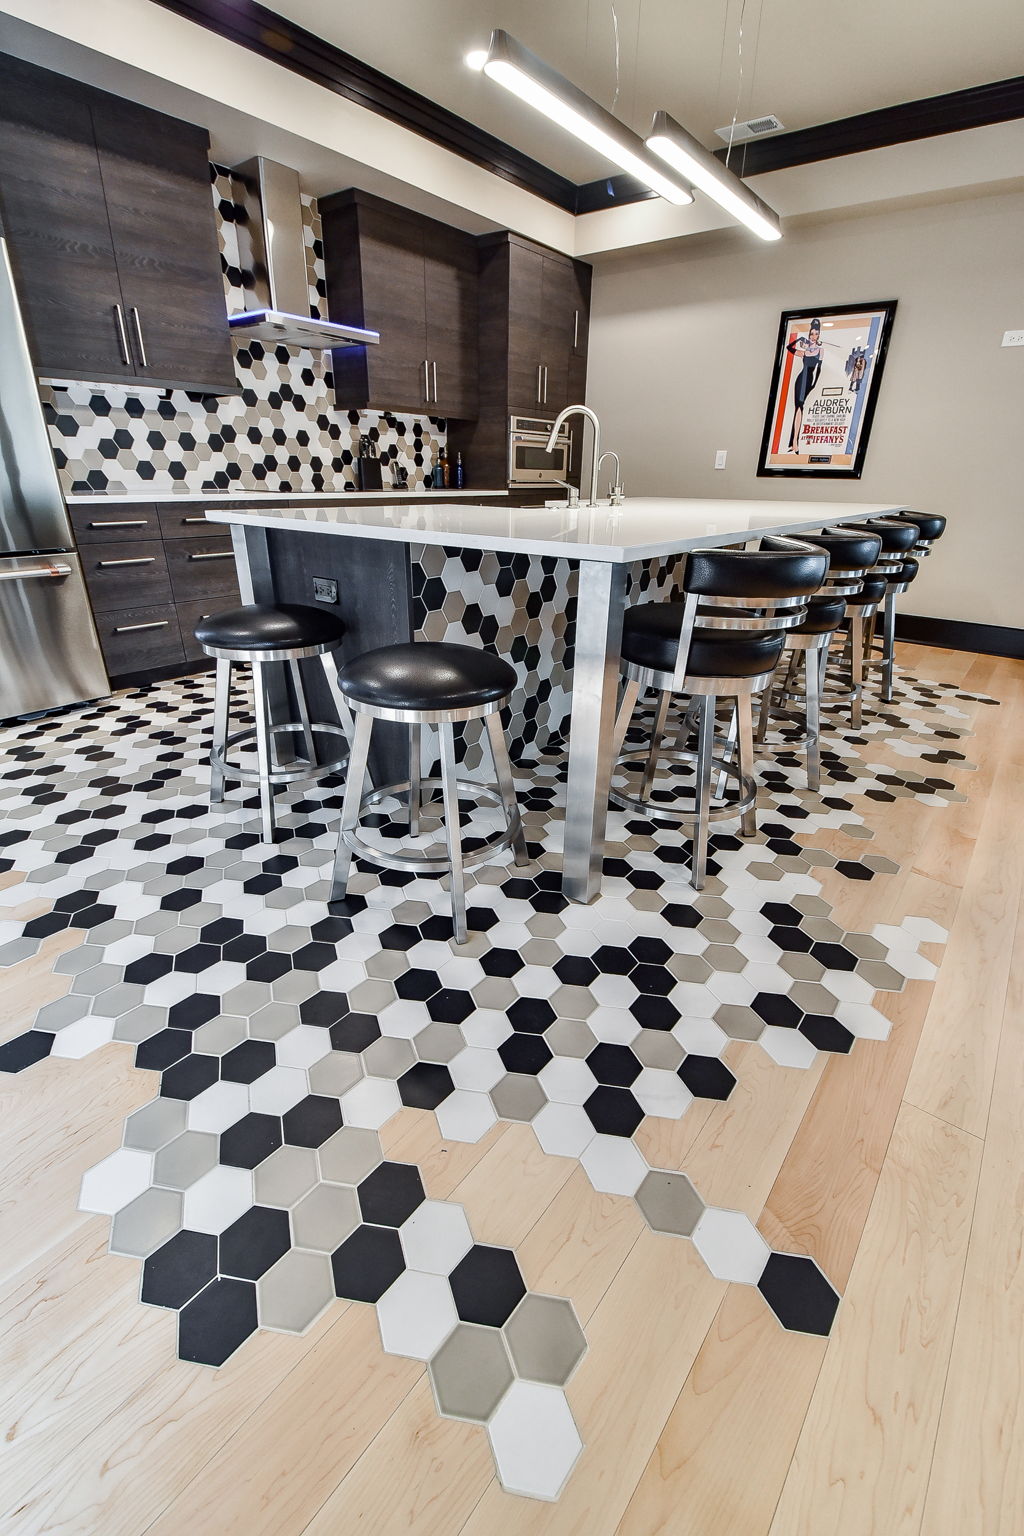 Basement Kitchen Floor - 